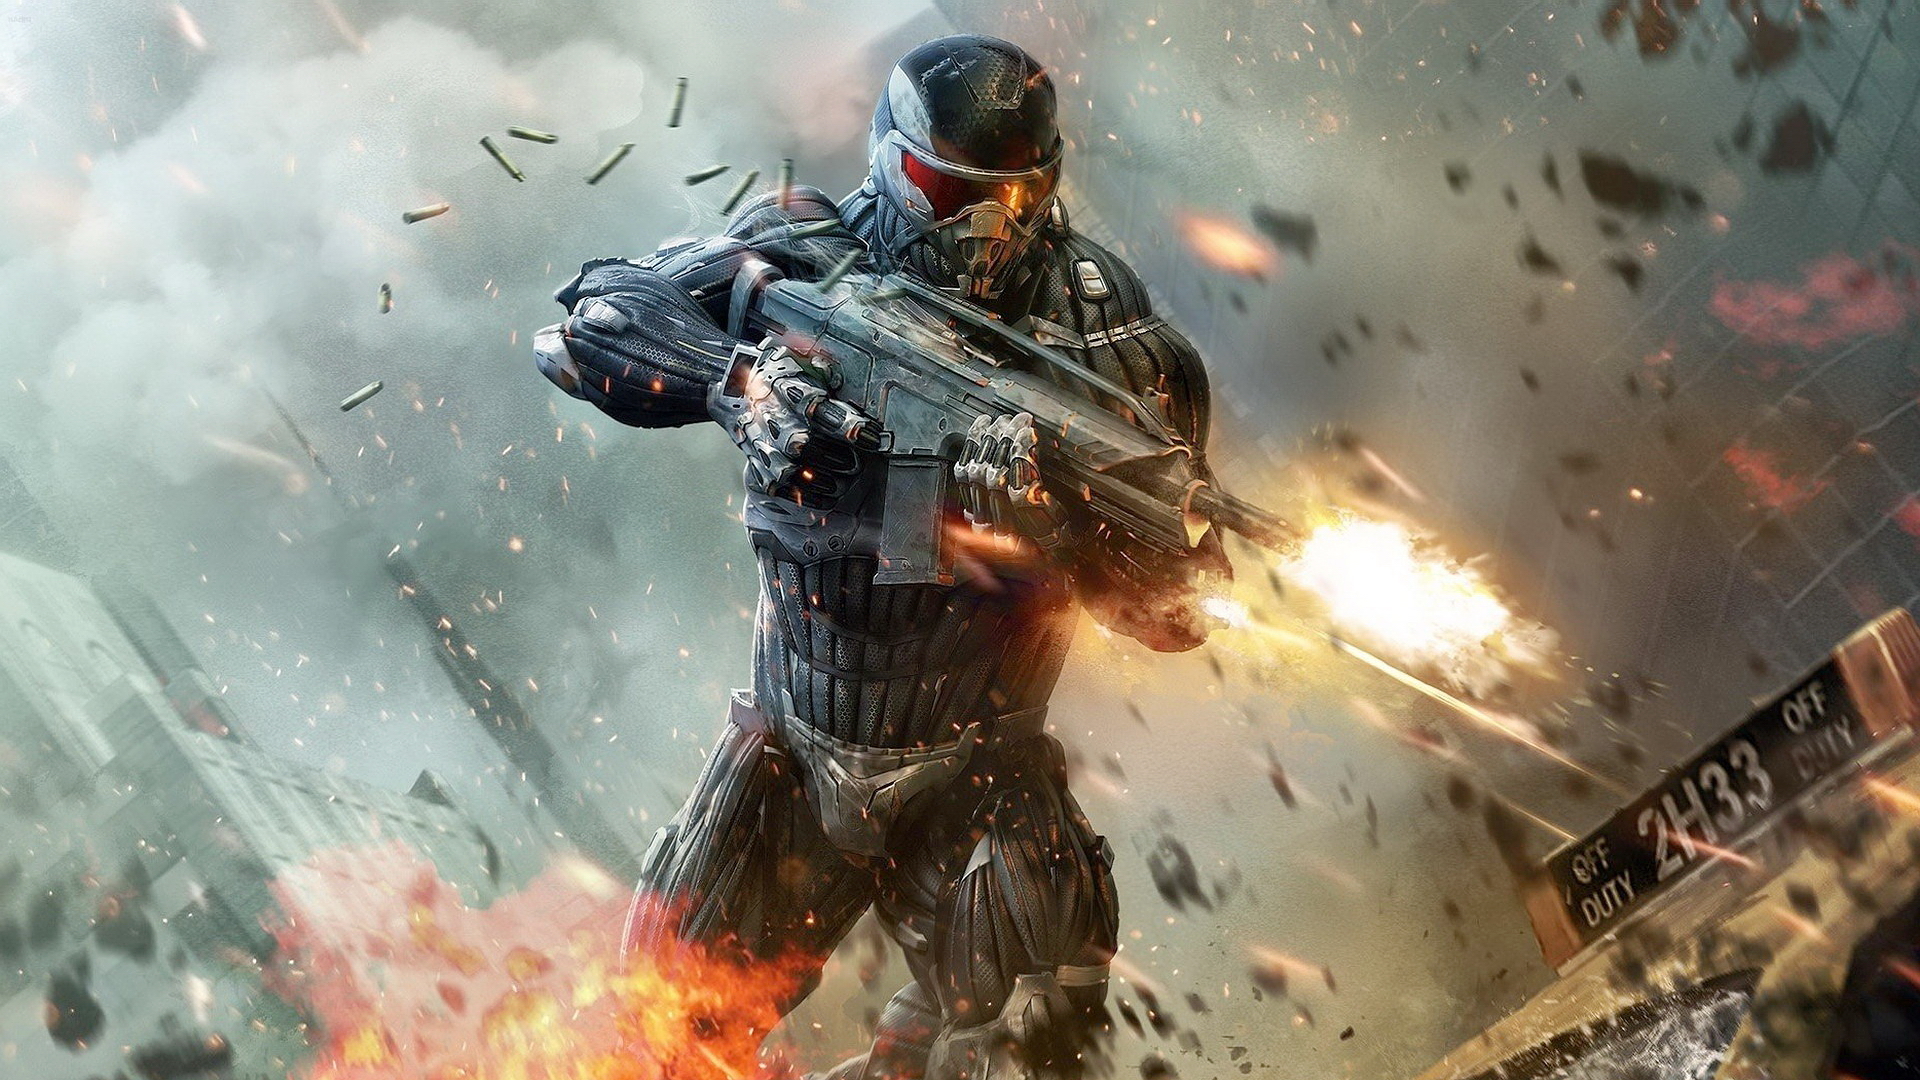 3d обои Воин будущего стреляет из автомата для игры «Crysis 2» (off duty 2h33)  милитари # 53723